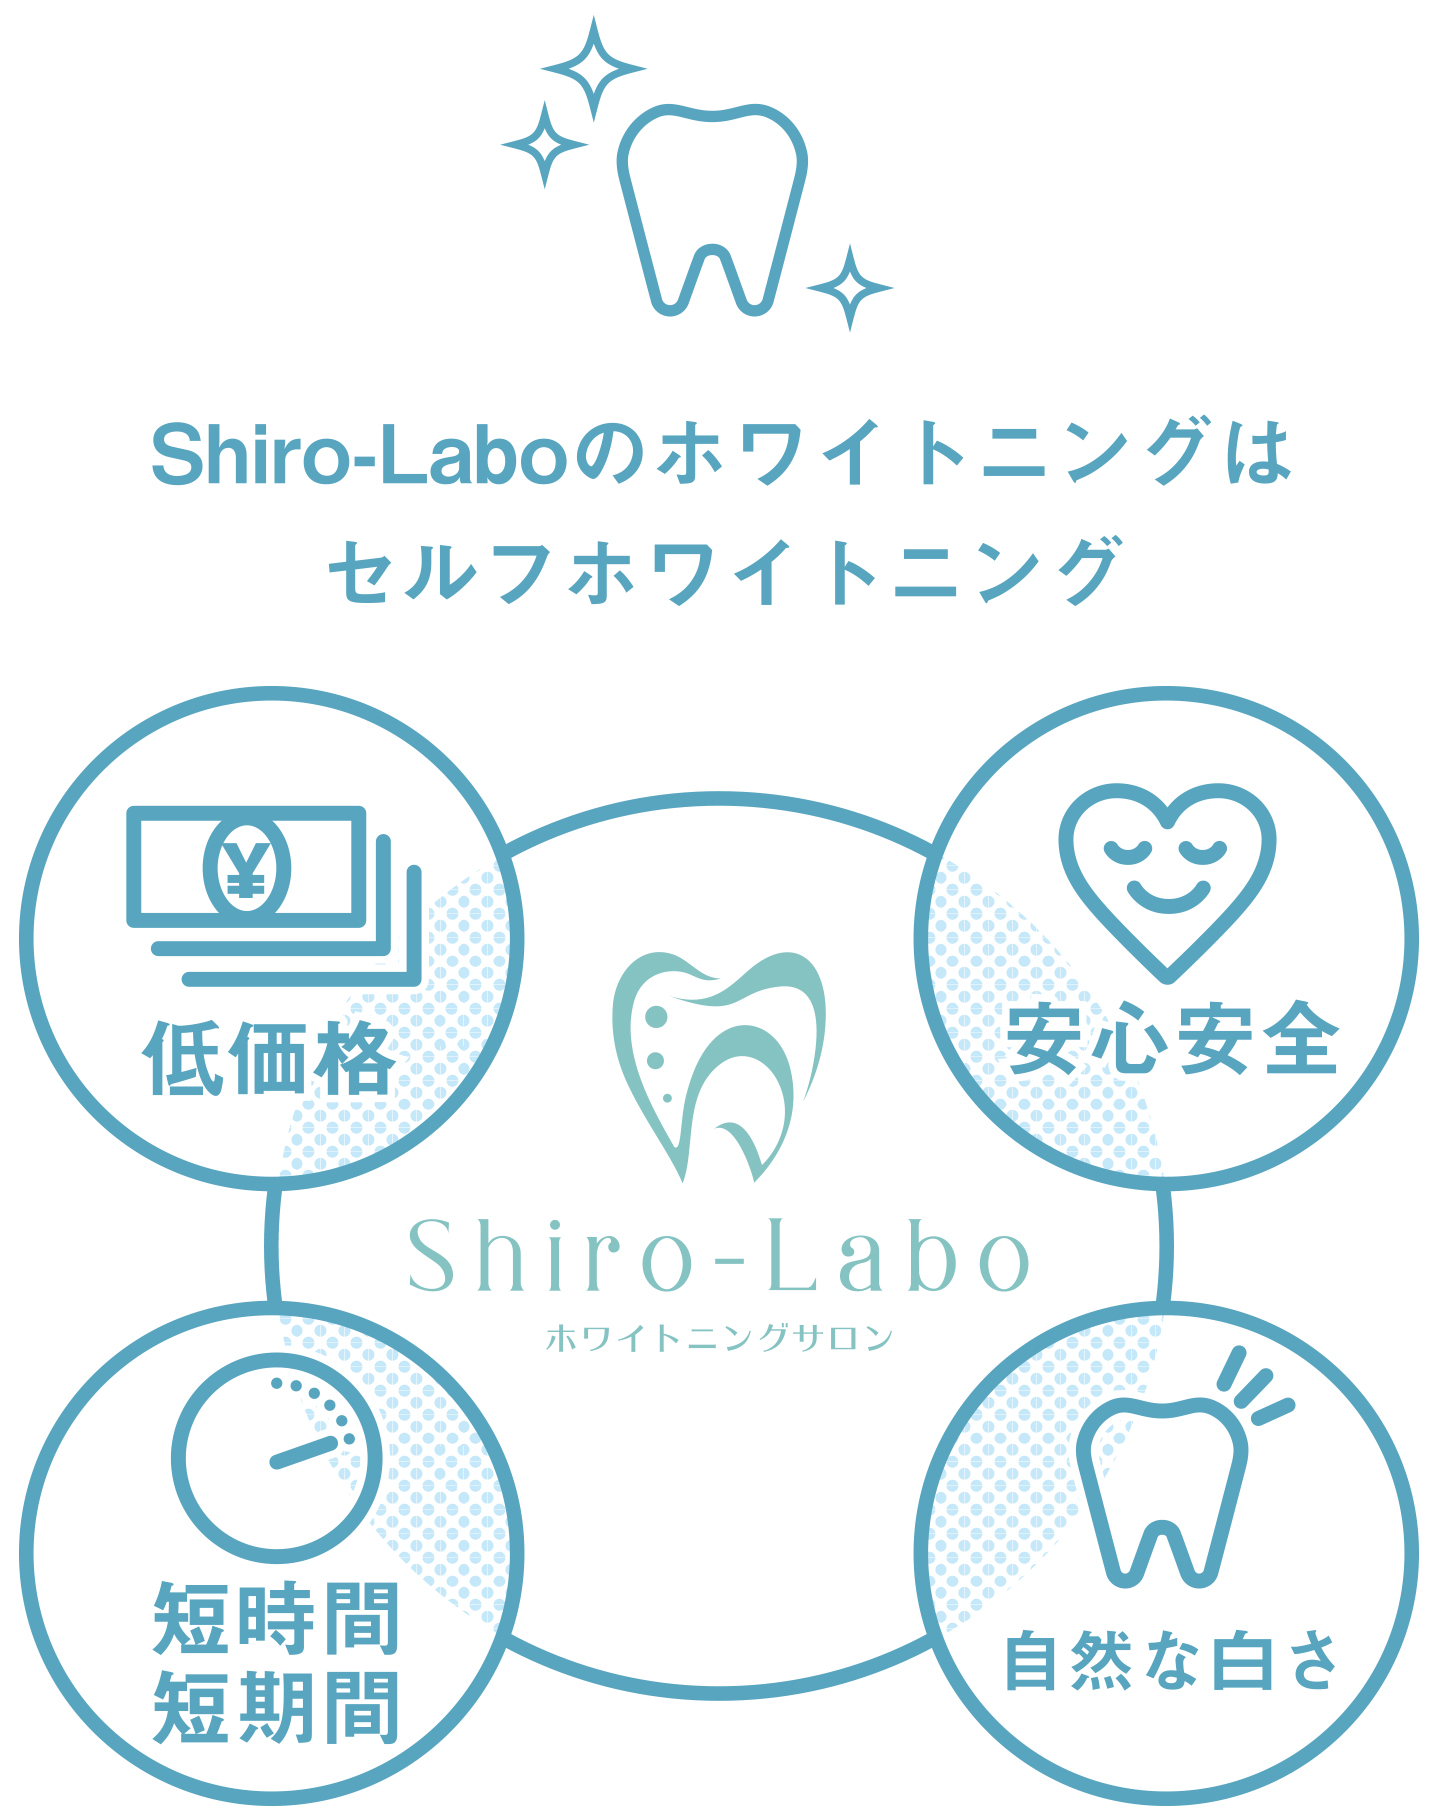 Shiro-Labo（シロラボ）のホワイトニングはセルフホワイトニング